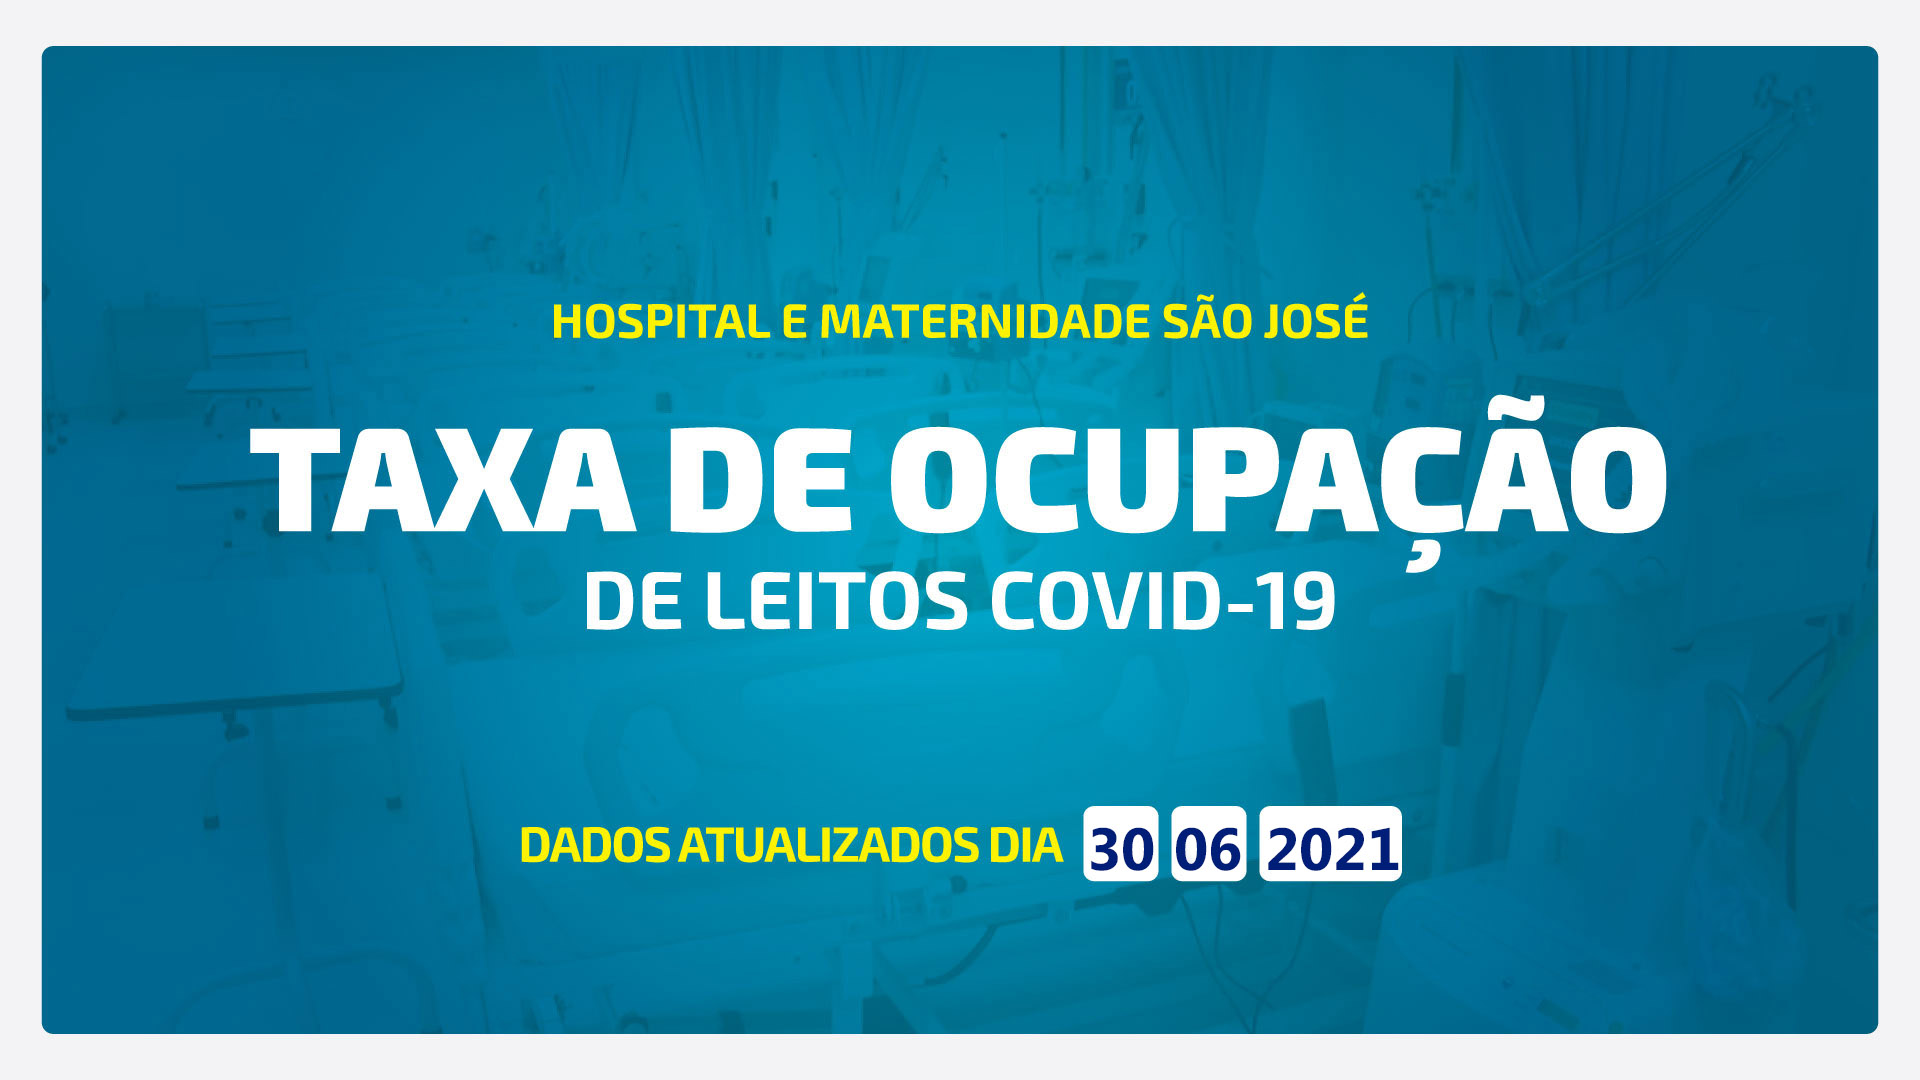 TAXA DE OCUPAÇÃO DE LEITOS DE COVID-19 ATUALIZADA DIA 30/06/2021